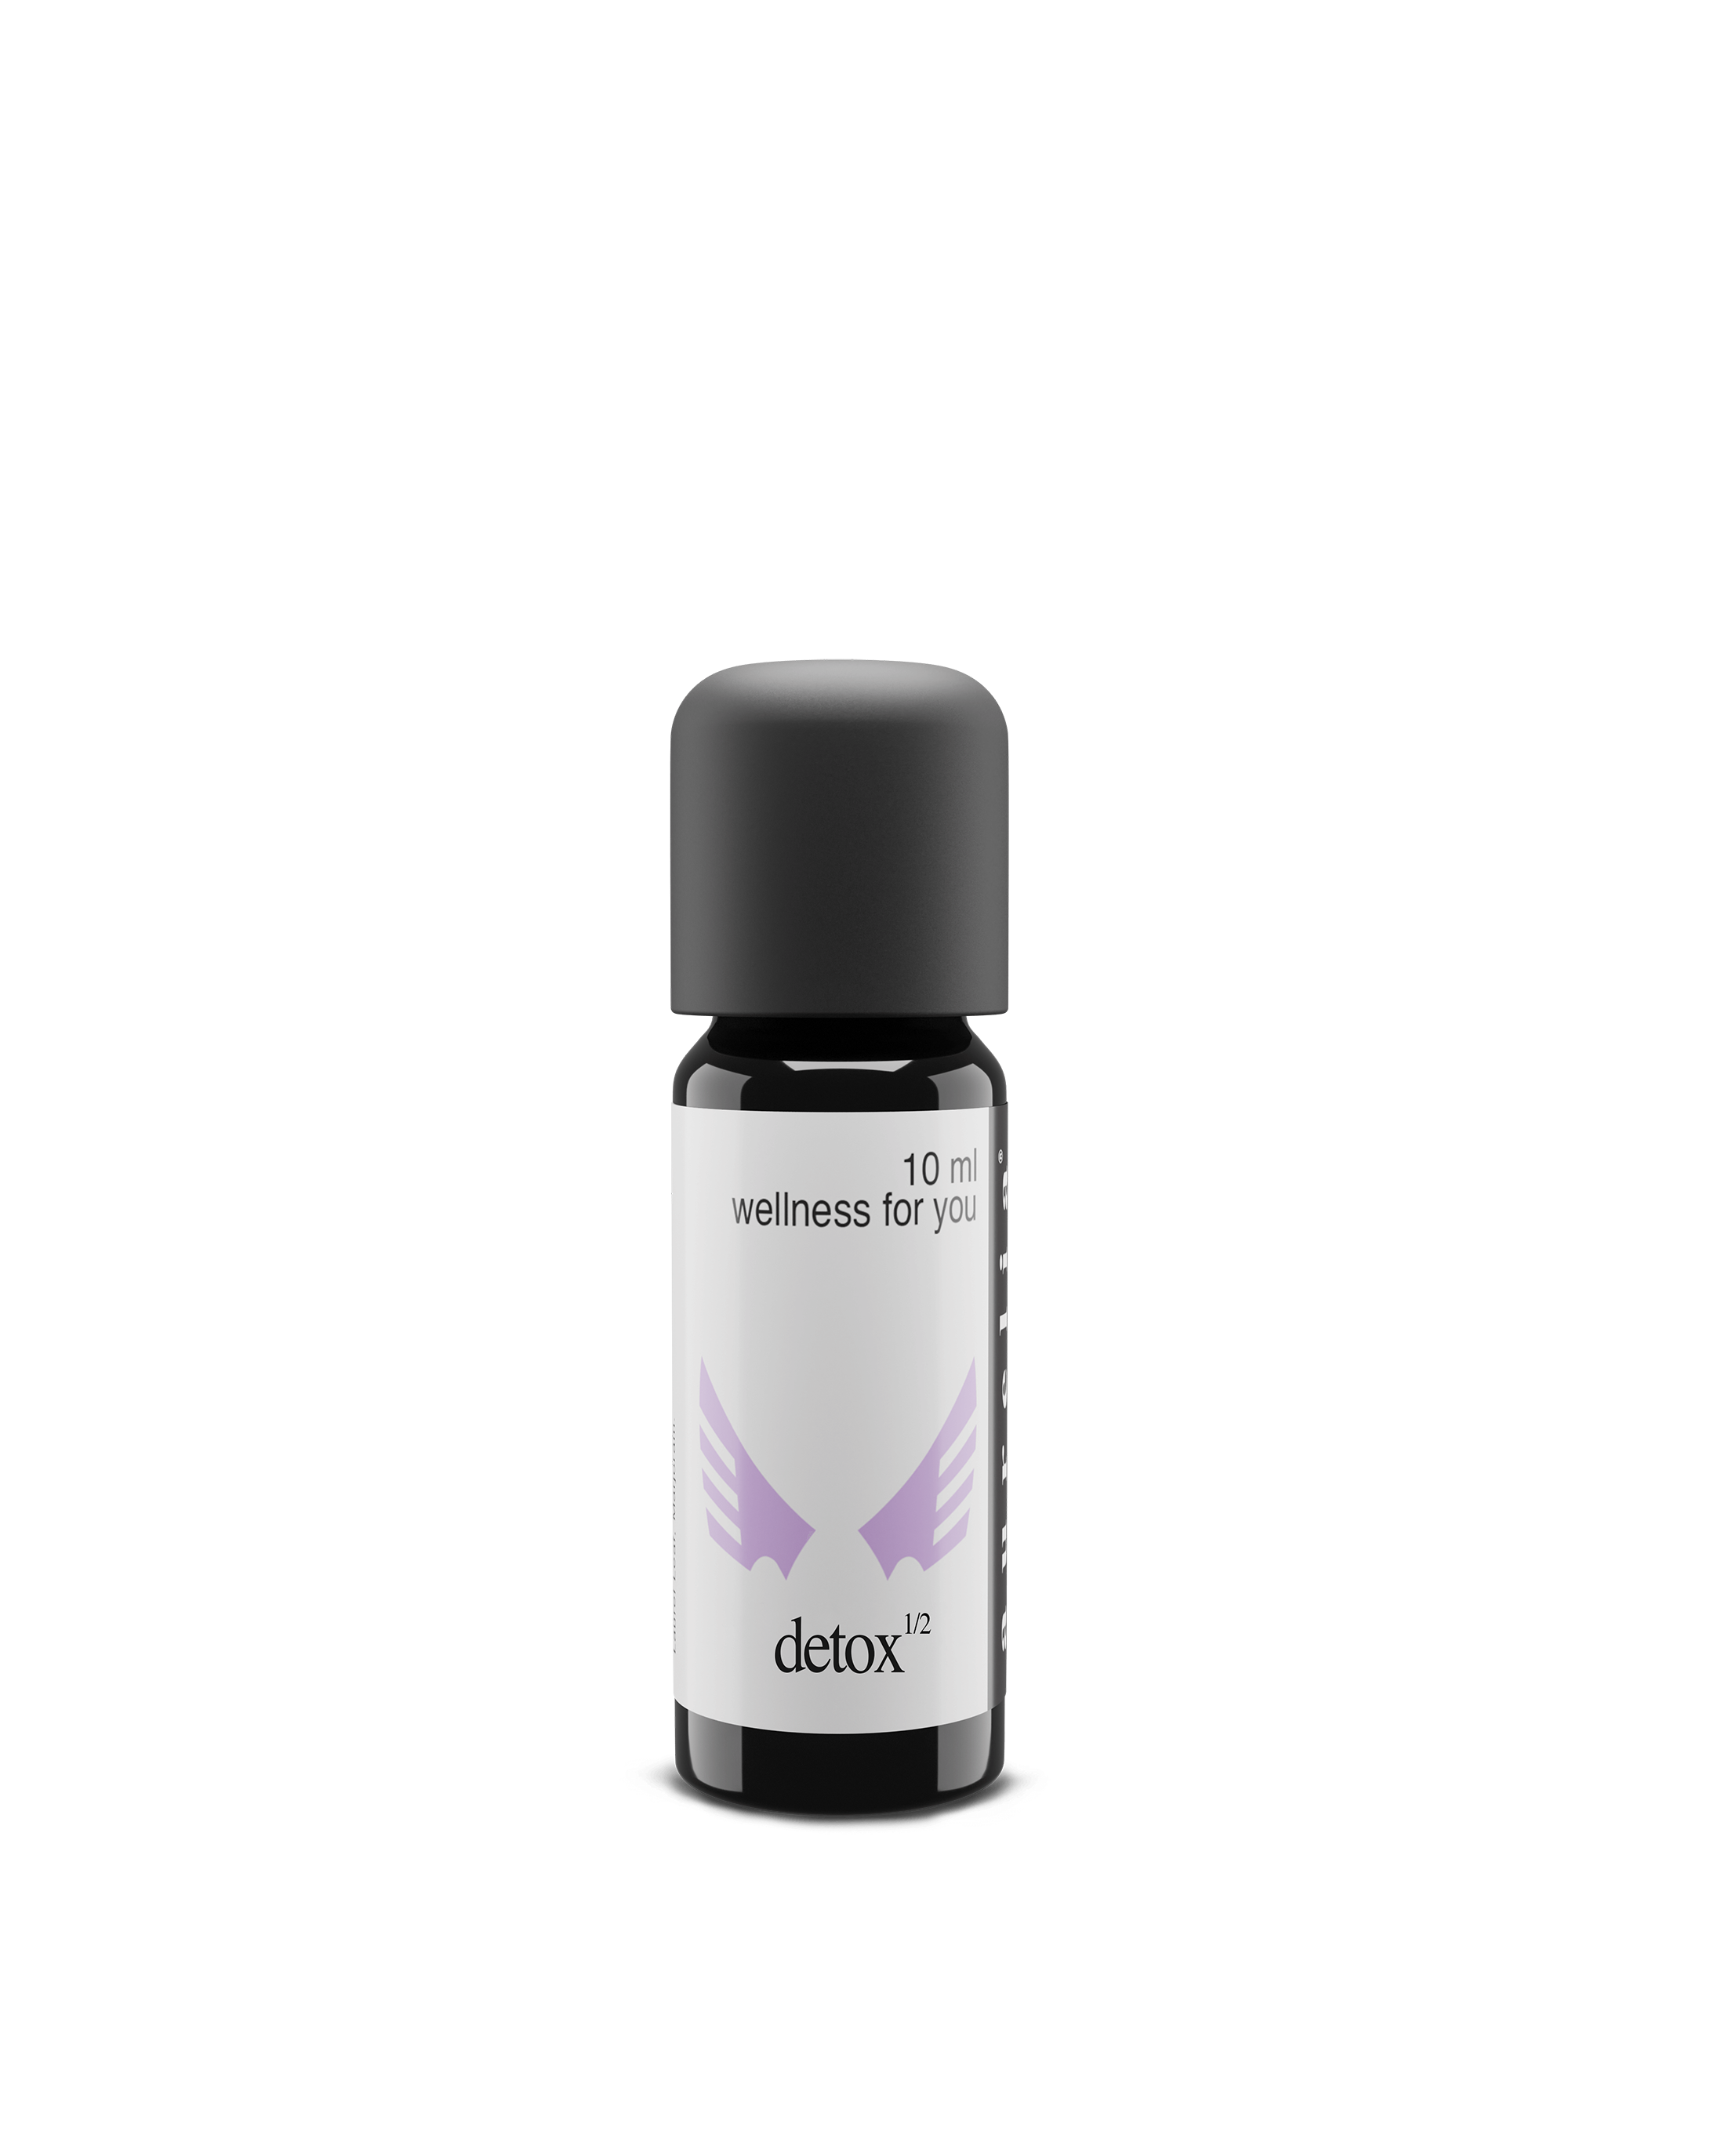 Detox 2 Essential Oil Blend - Aurelia Essential Oils®